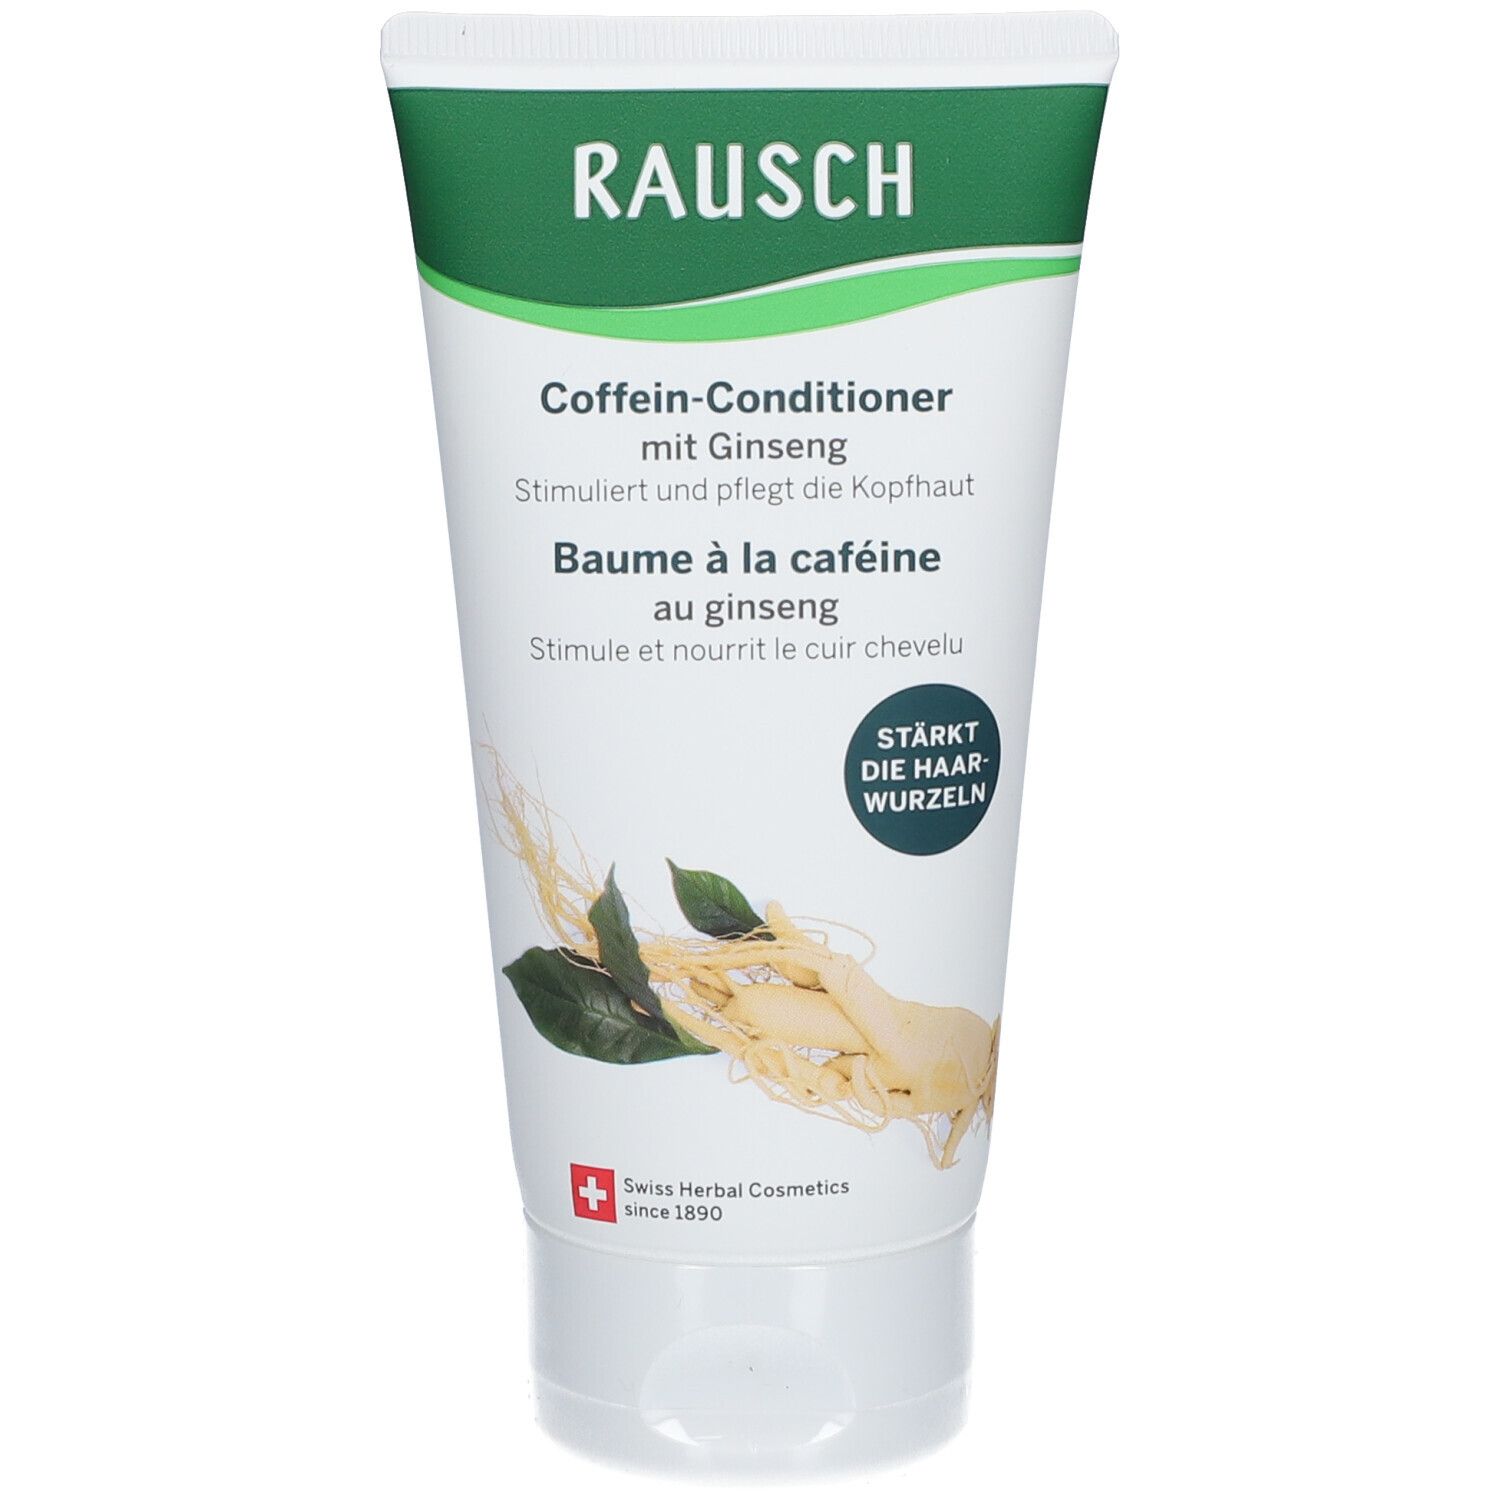 Rausch Coffein Conditioner Ginseng